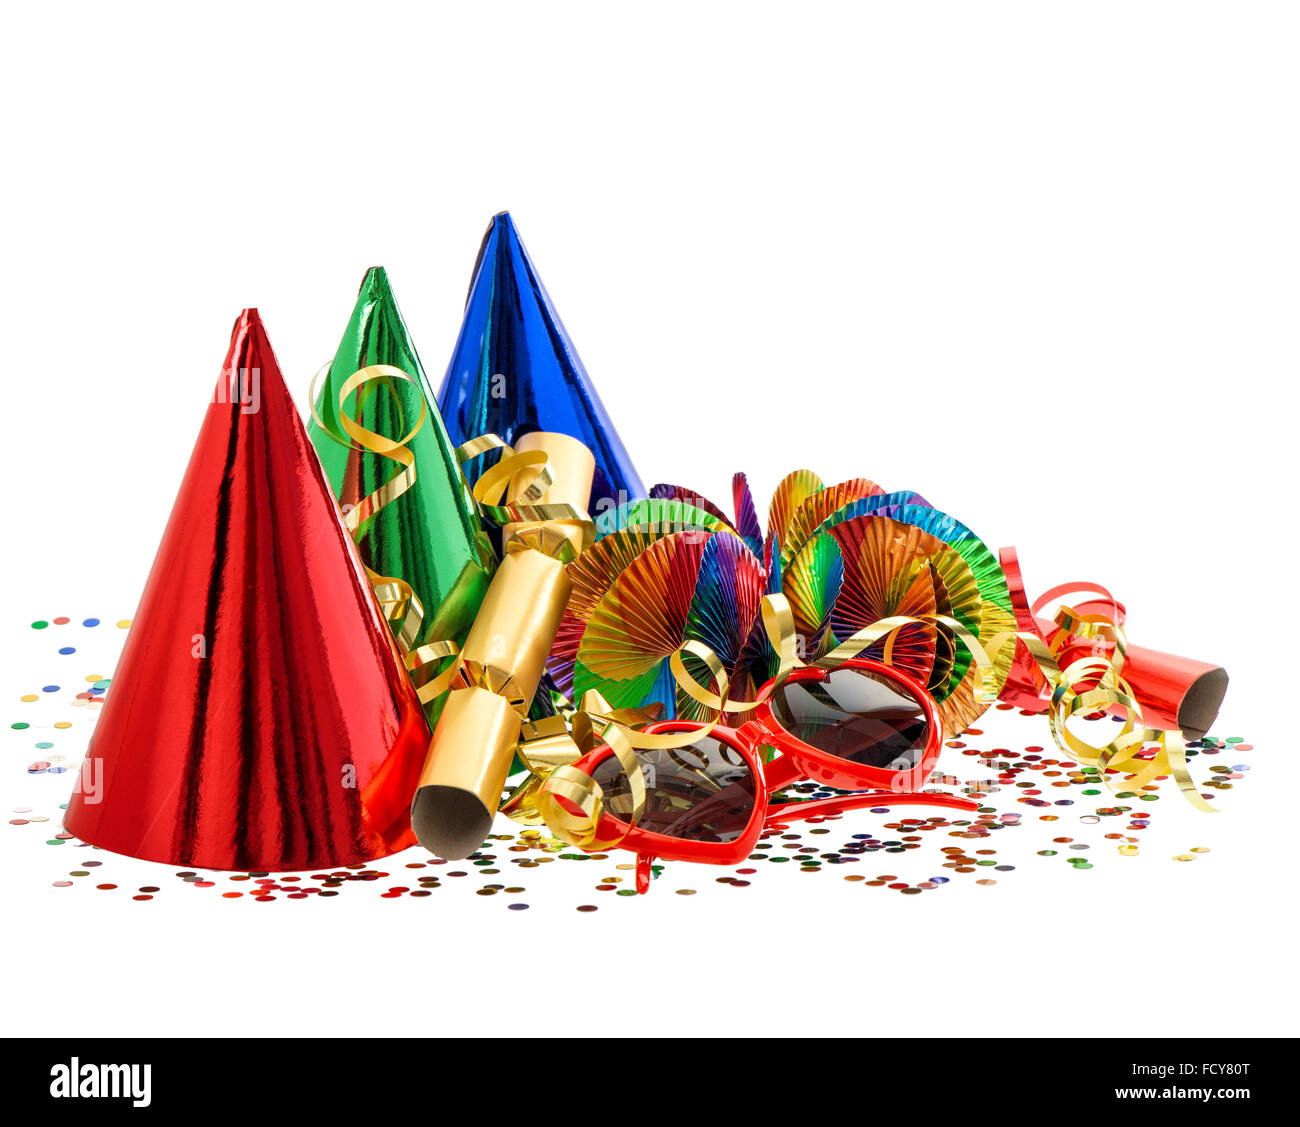 Serpentine, garlands, streamer, confetti. Carnival party decoration. Mardi gras Stock Photo